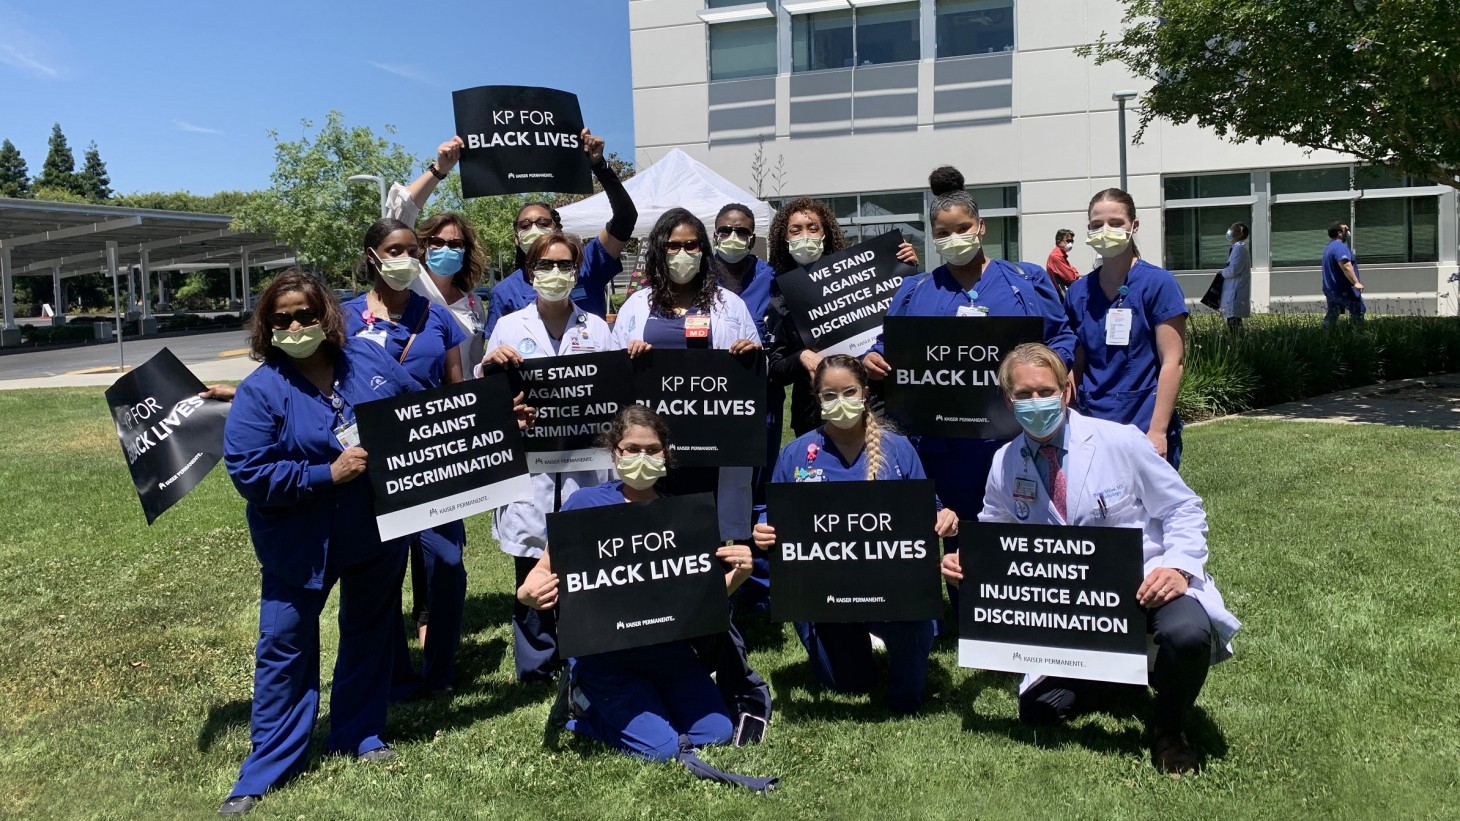 一群医护人员,穿着磨砂和面膜,标语上写道:,“KP黑人的生活”